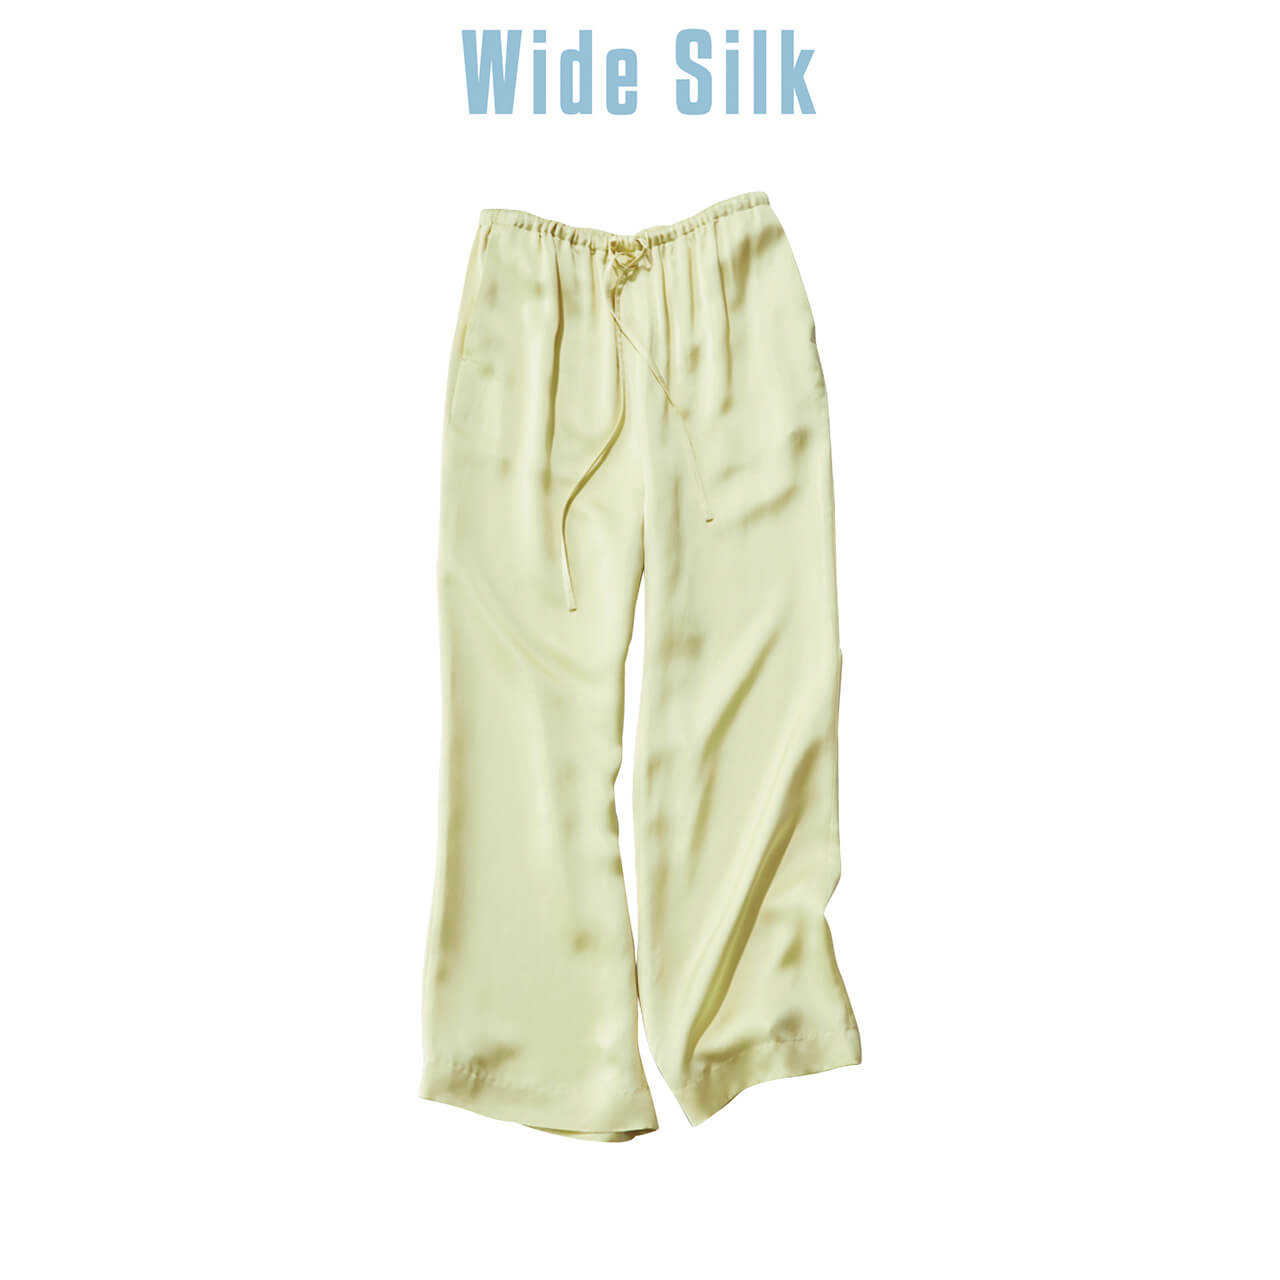 Wide Silk